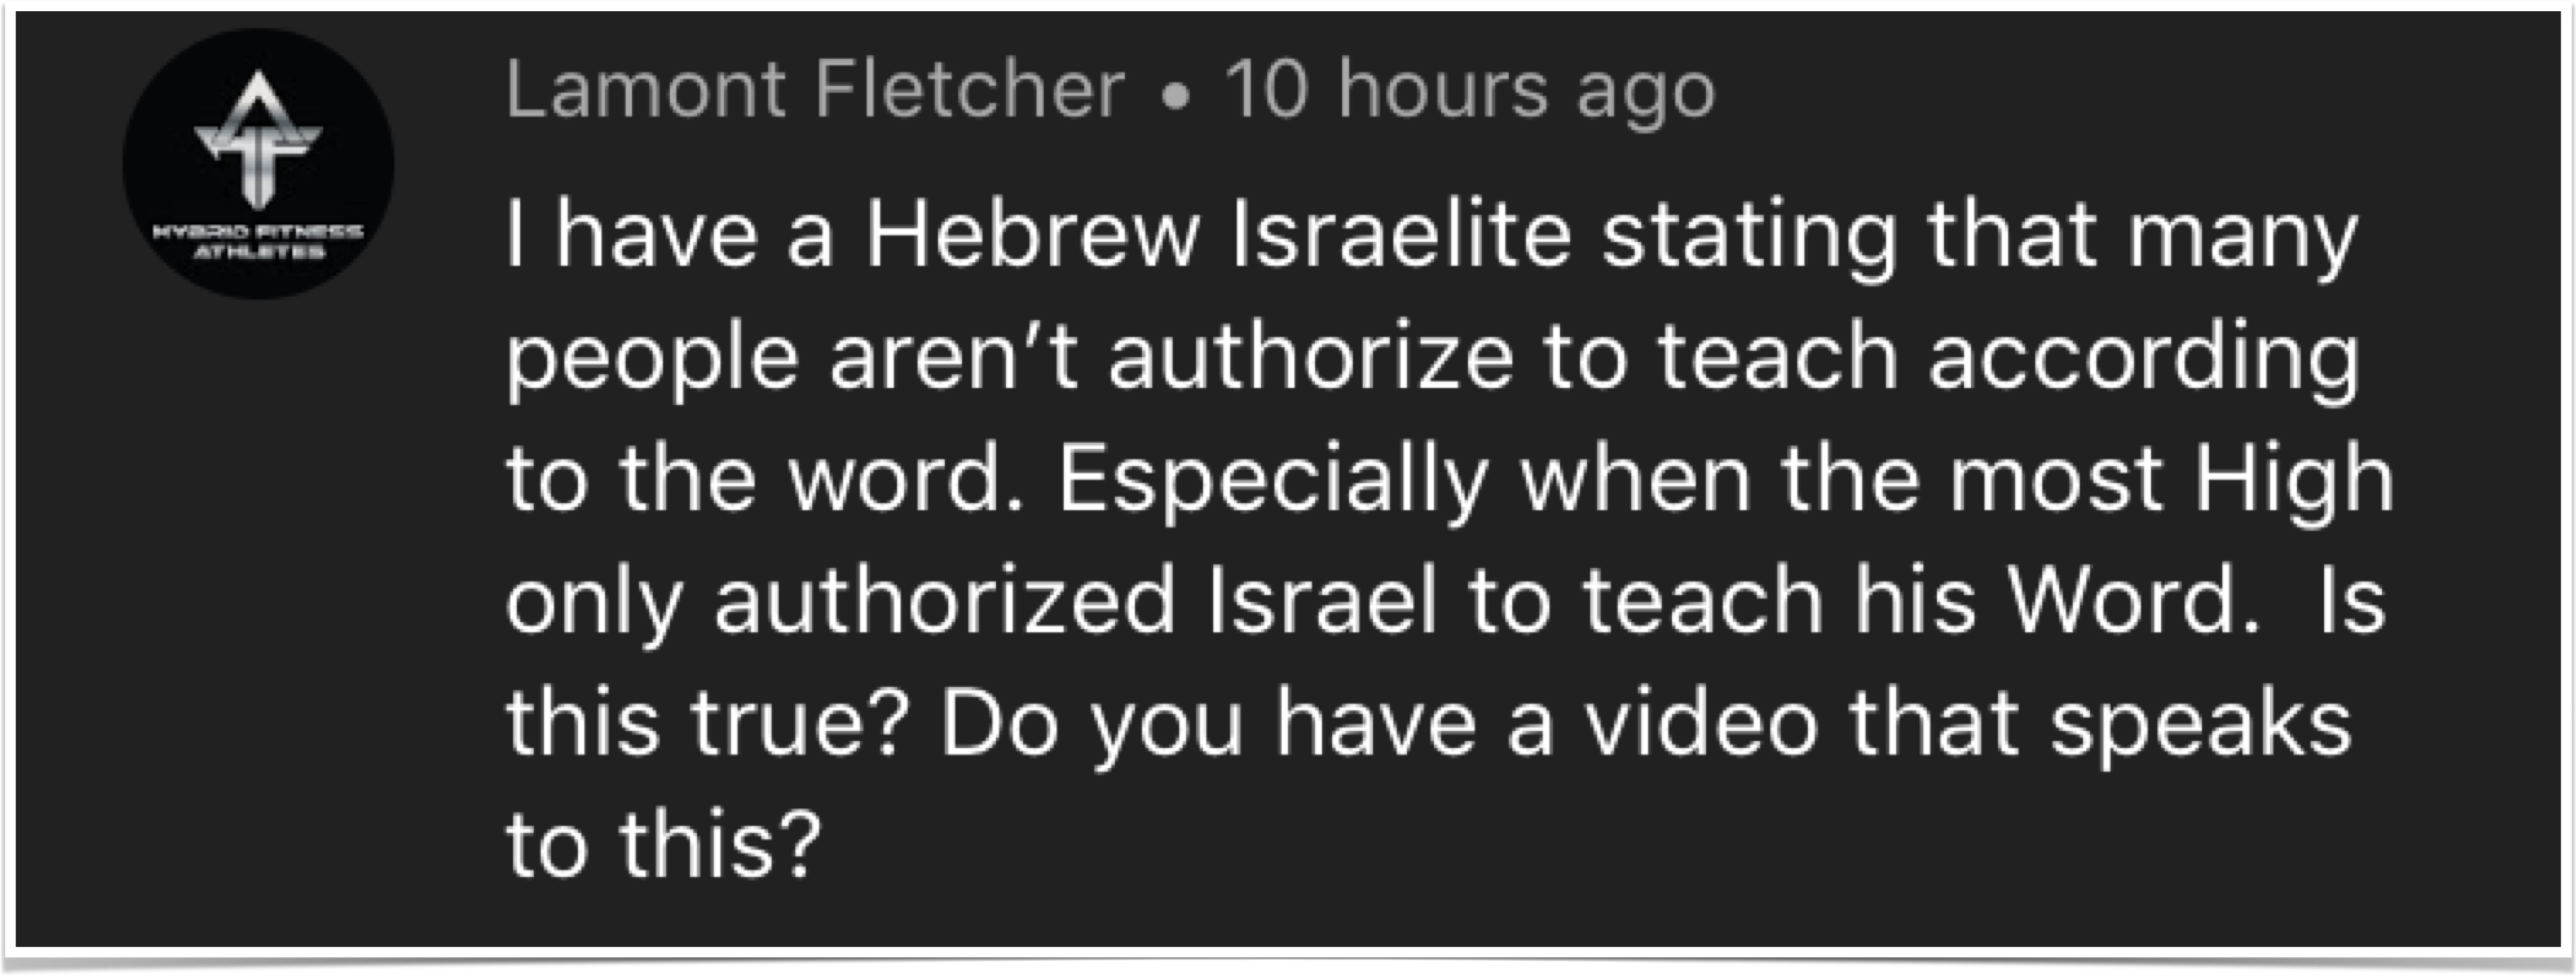 Hebrew Israelite concerned comment